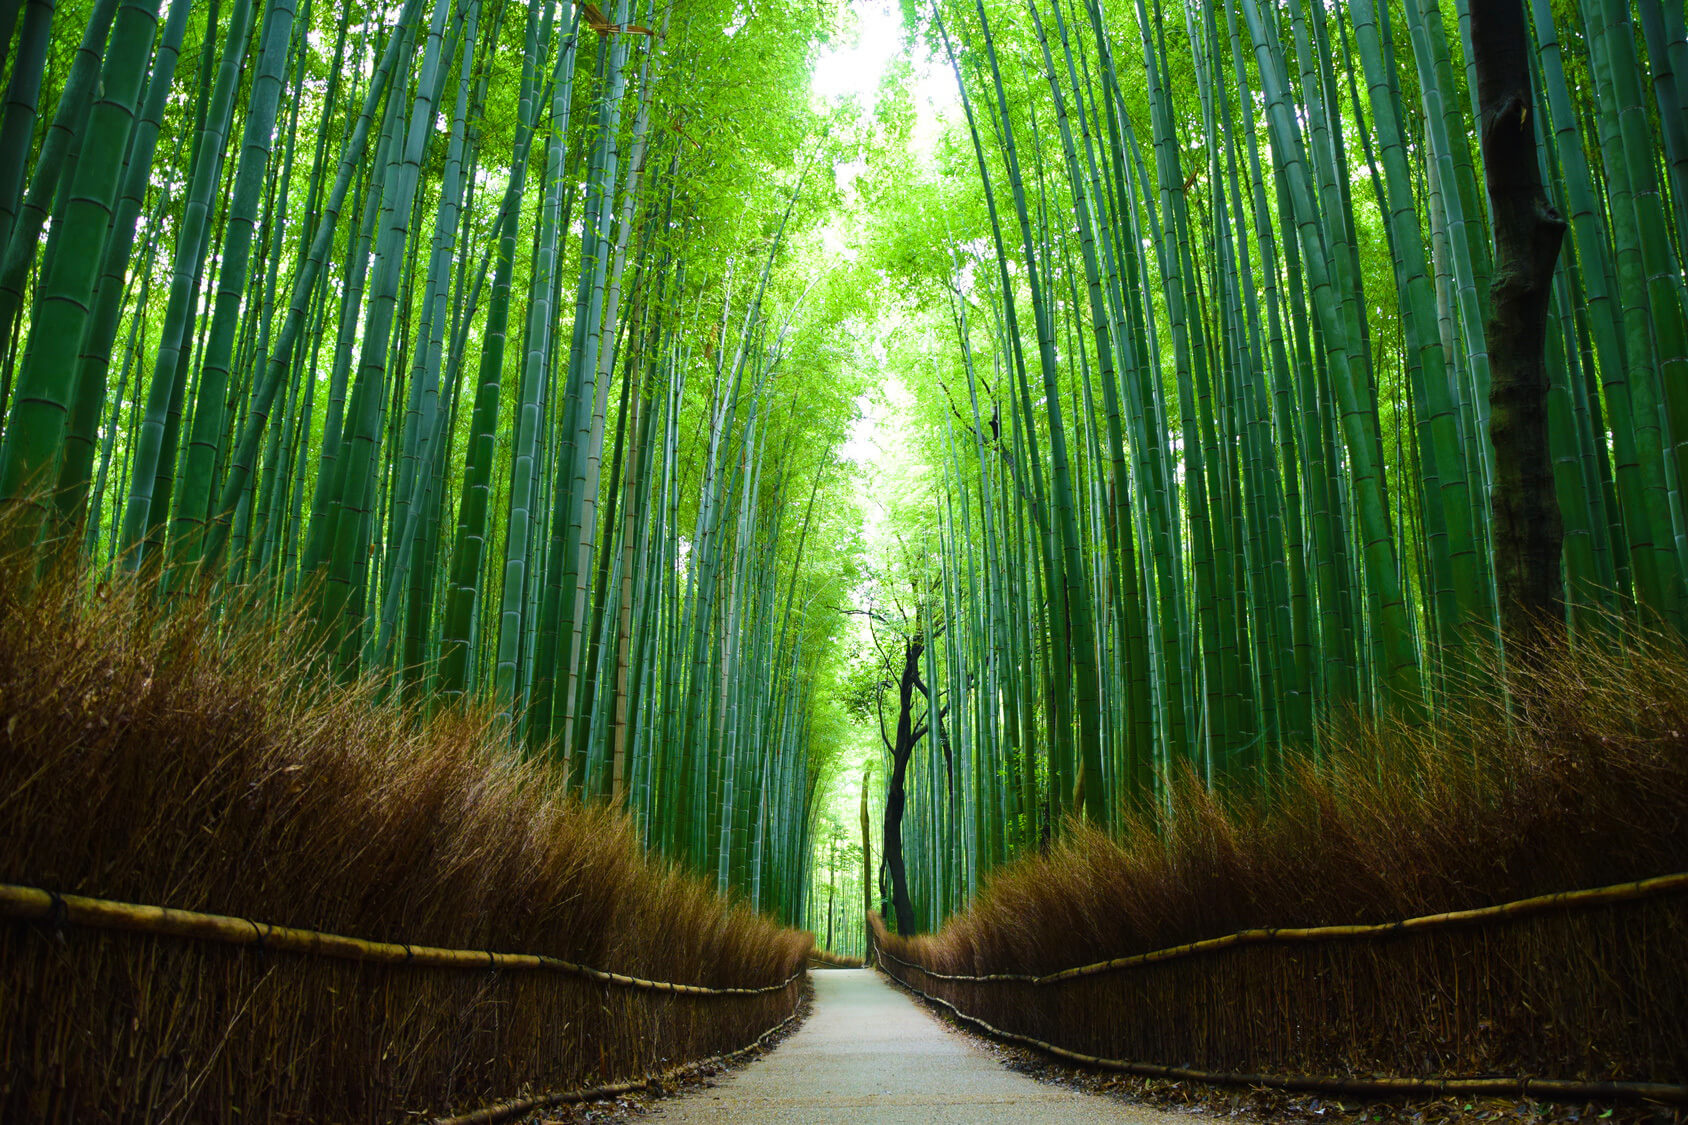 Monumentos naturales que descubrir - Bosque de Bambú de Arashiyama, Japón